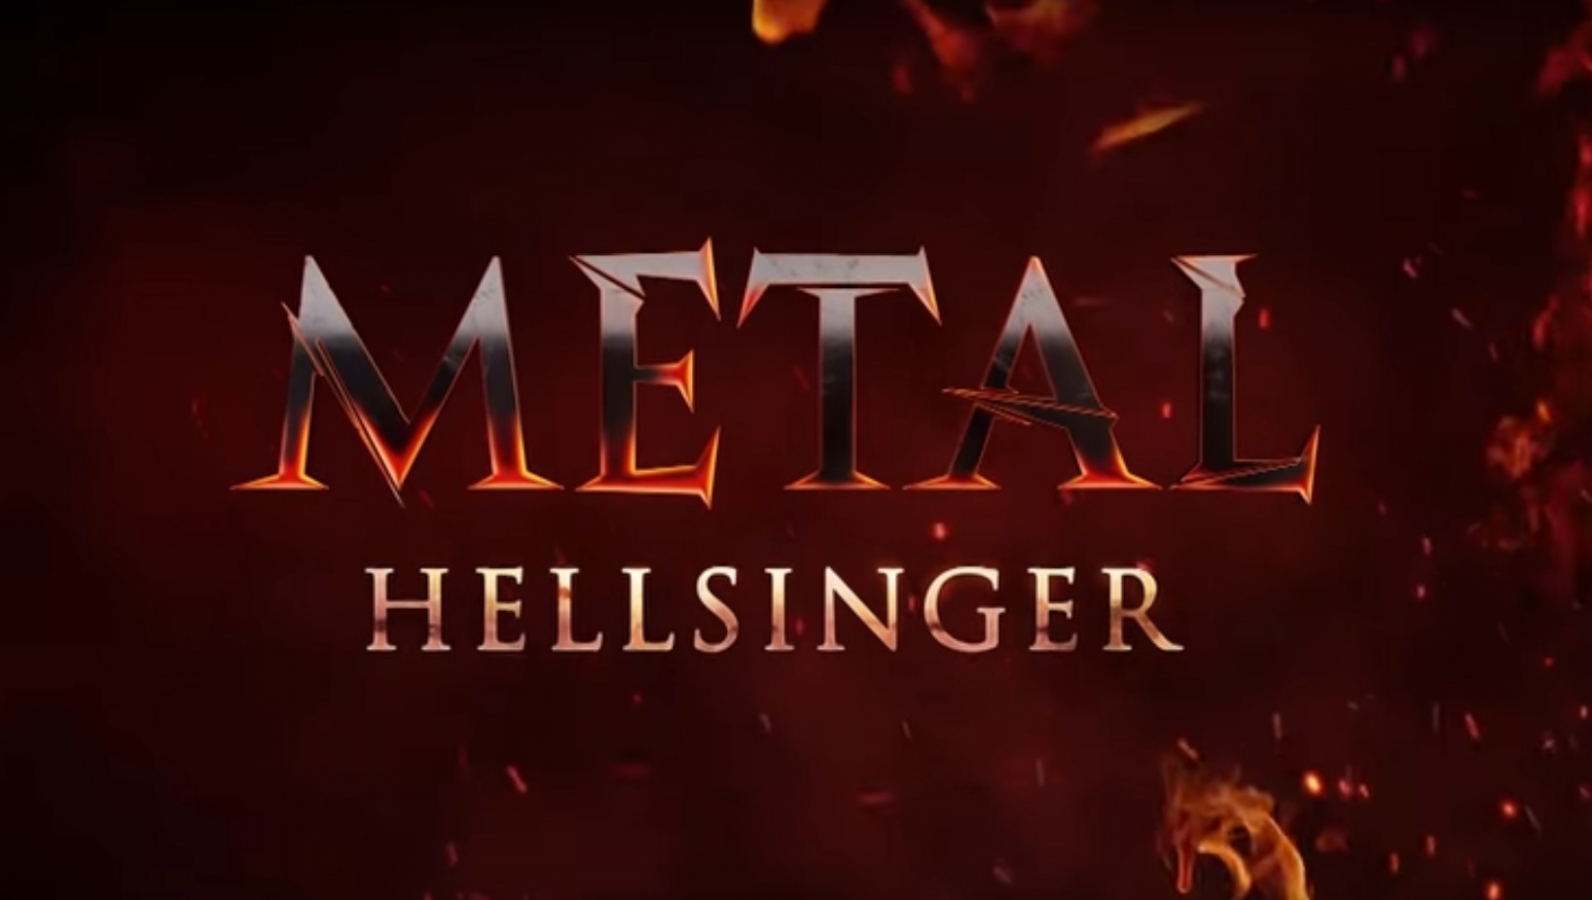 Metal: Hellsinger' is a rhythm FPS game due in 2021